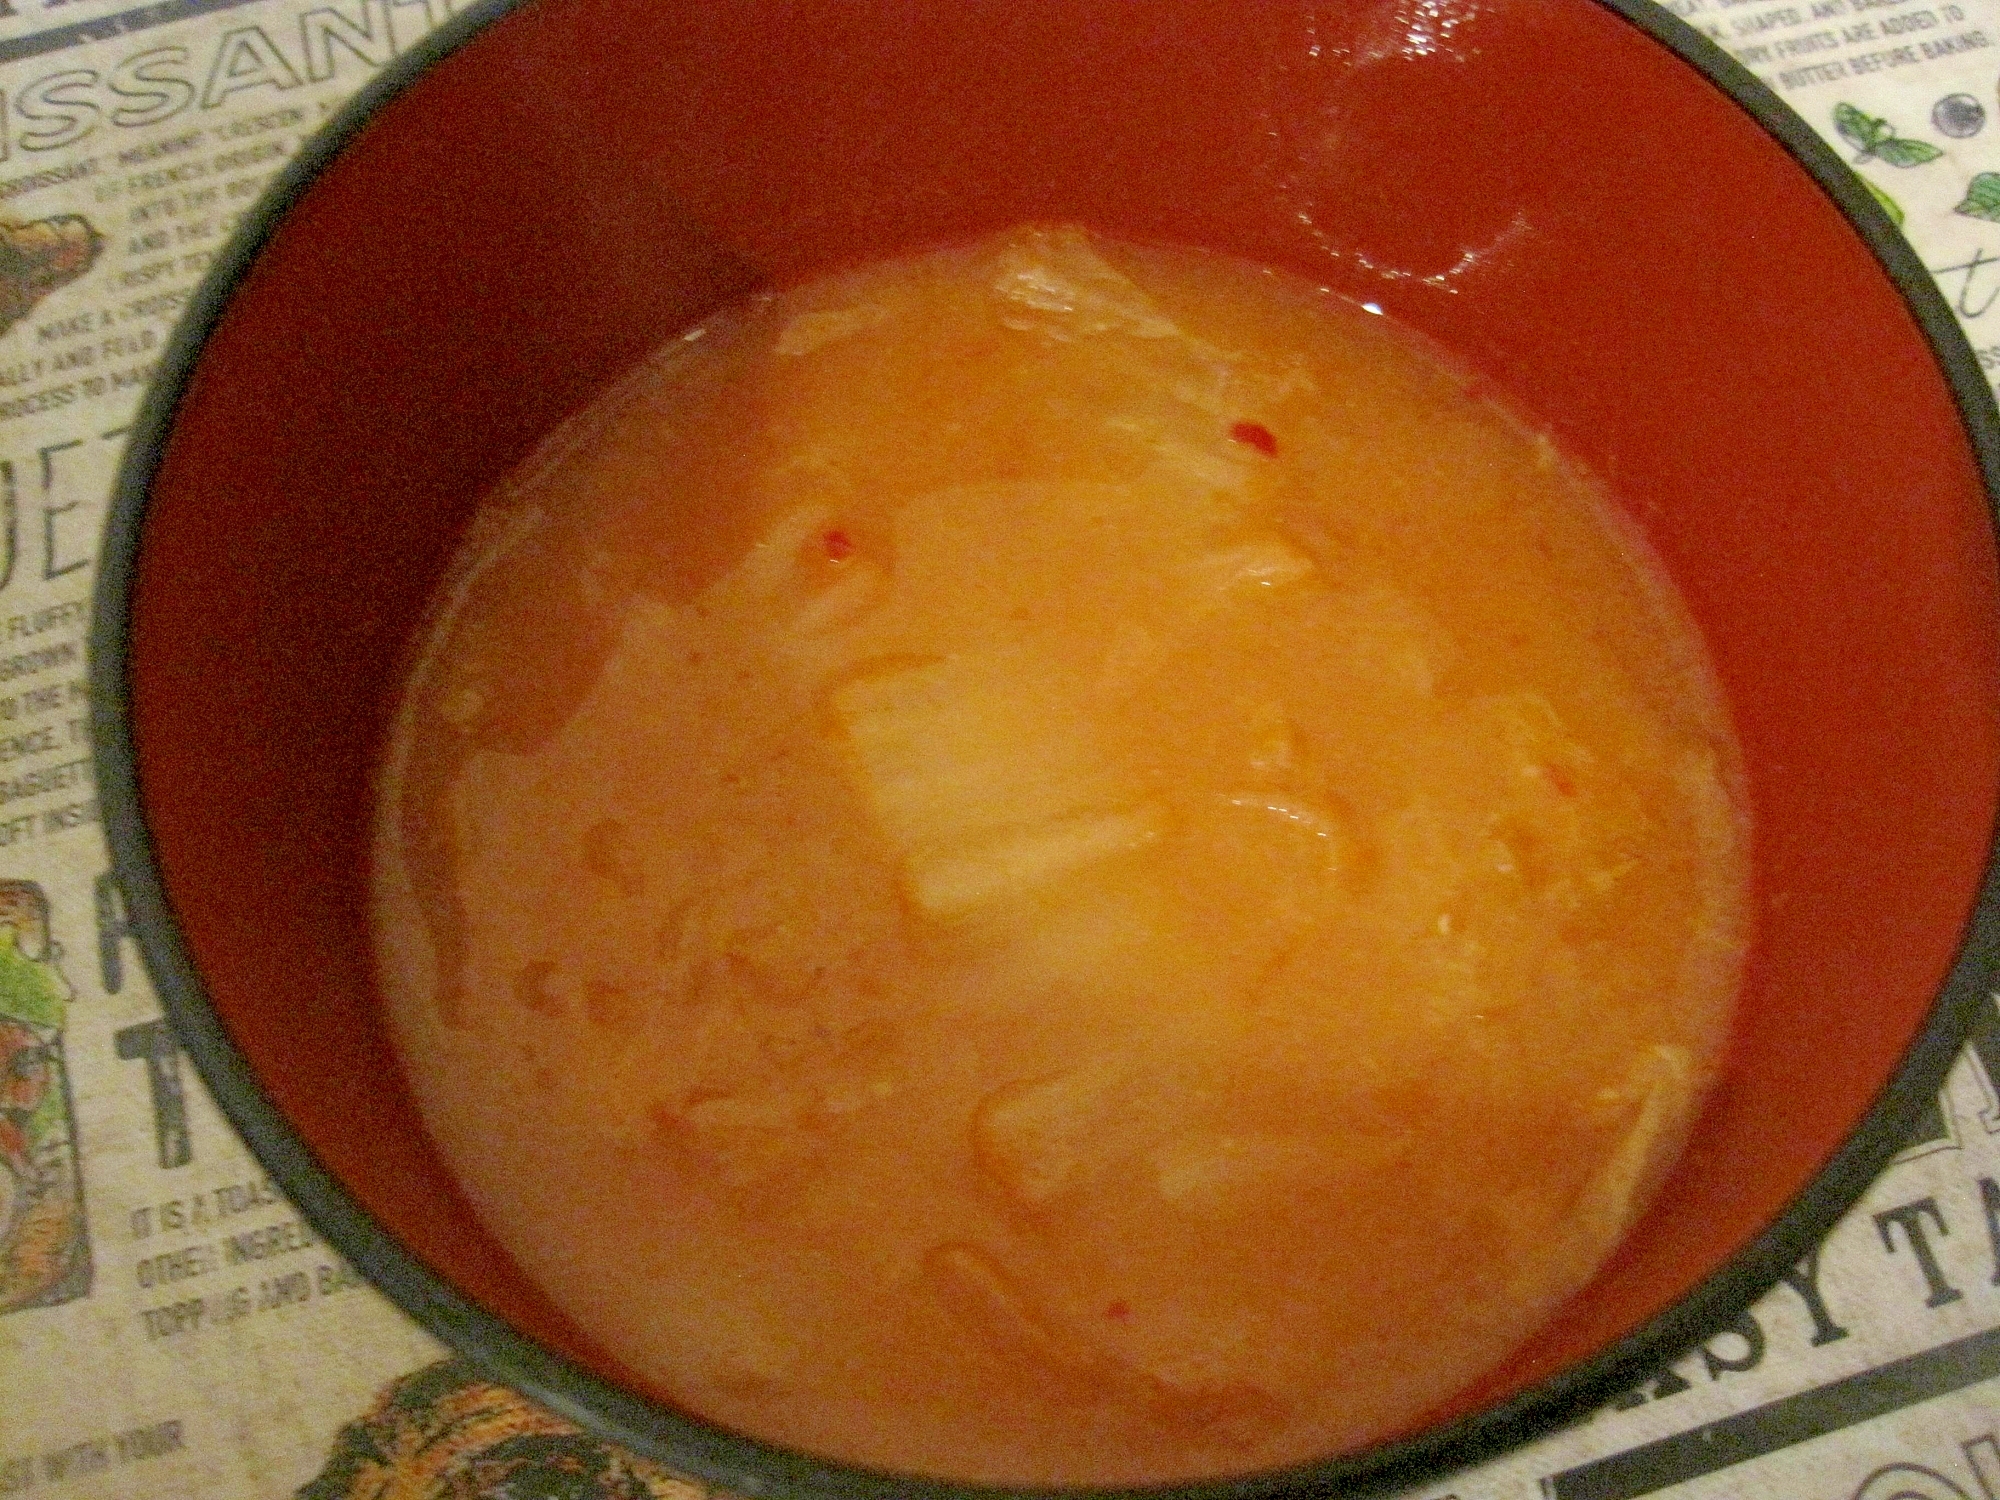 キムチの味噌汁